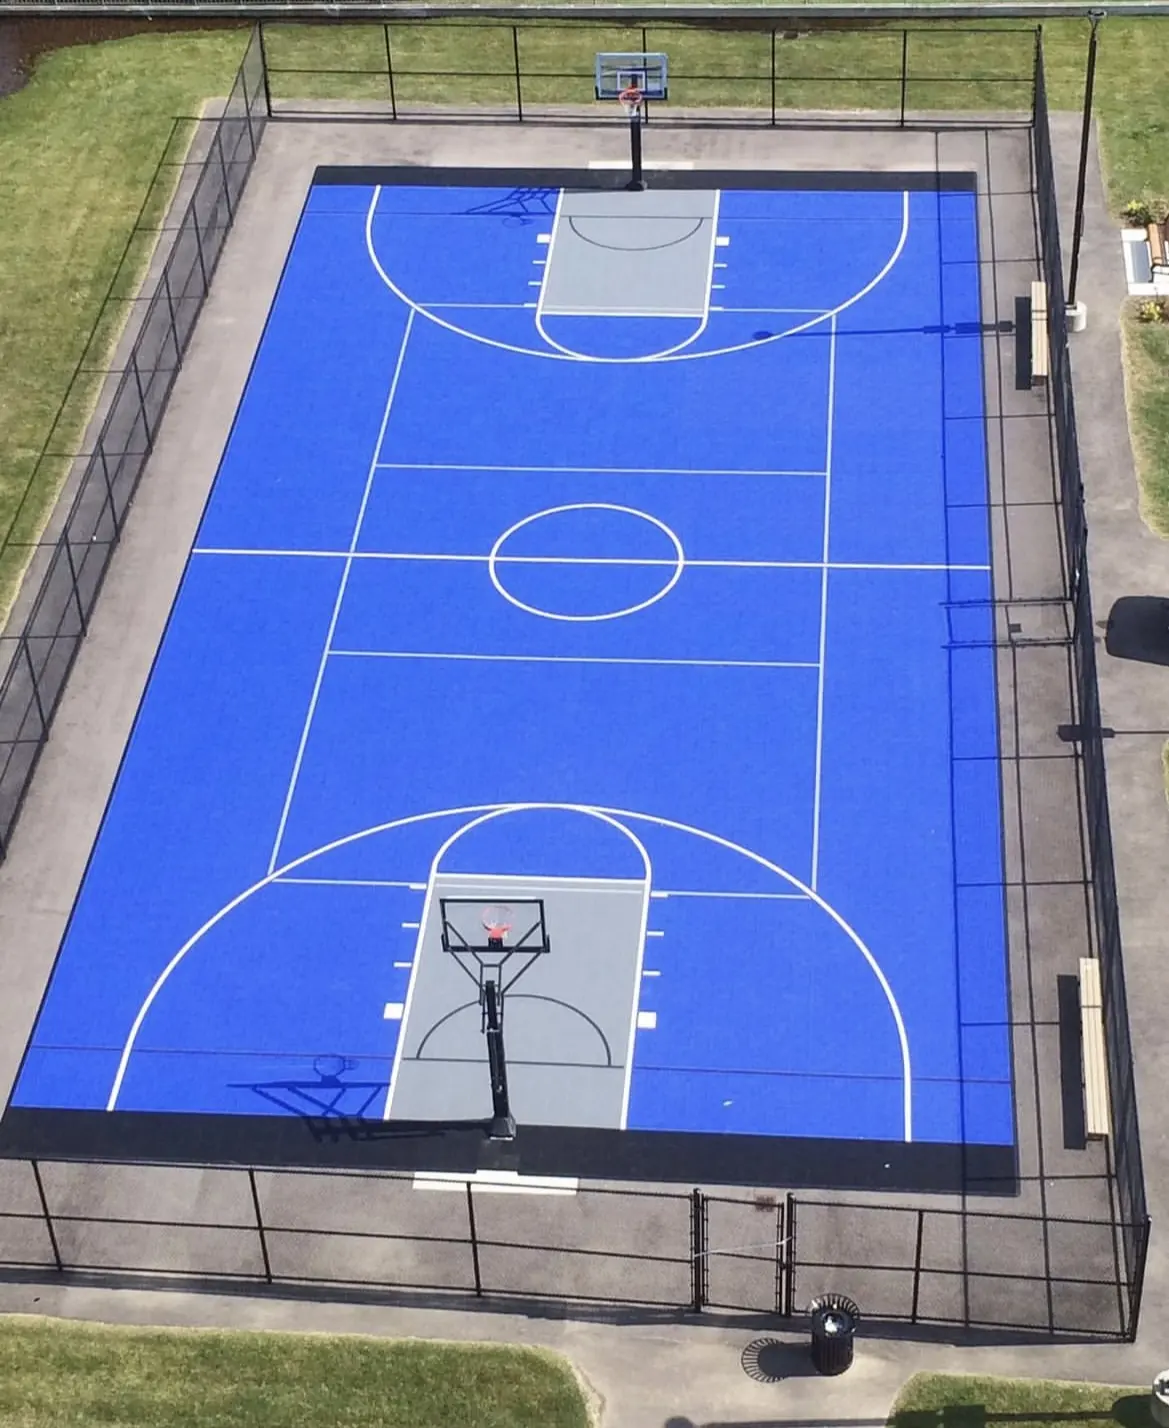 Cancha de baloncesto al aire libre alfombra de goma suelo de baloncesto cancha deportiva baldosas de PVC